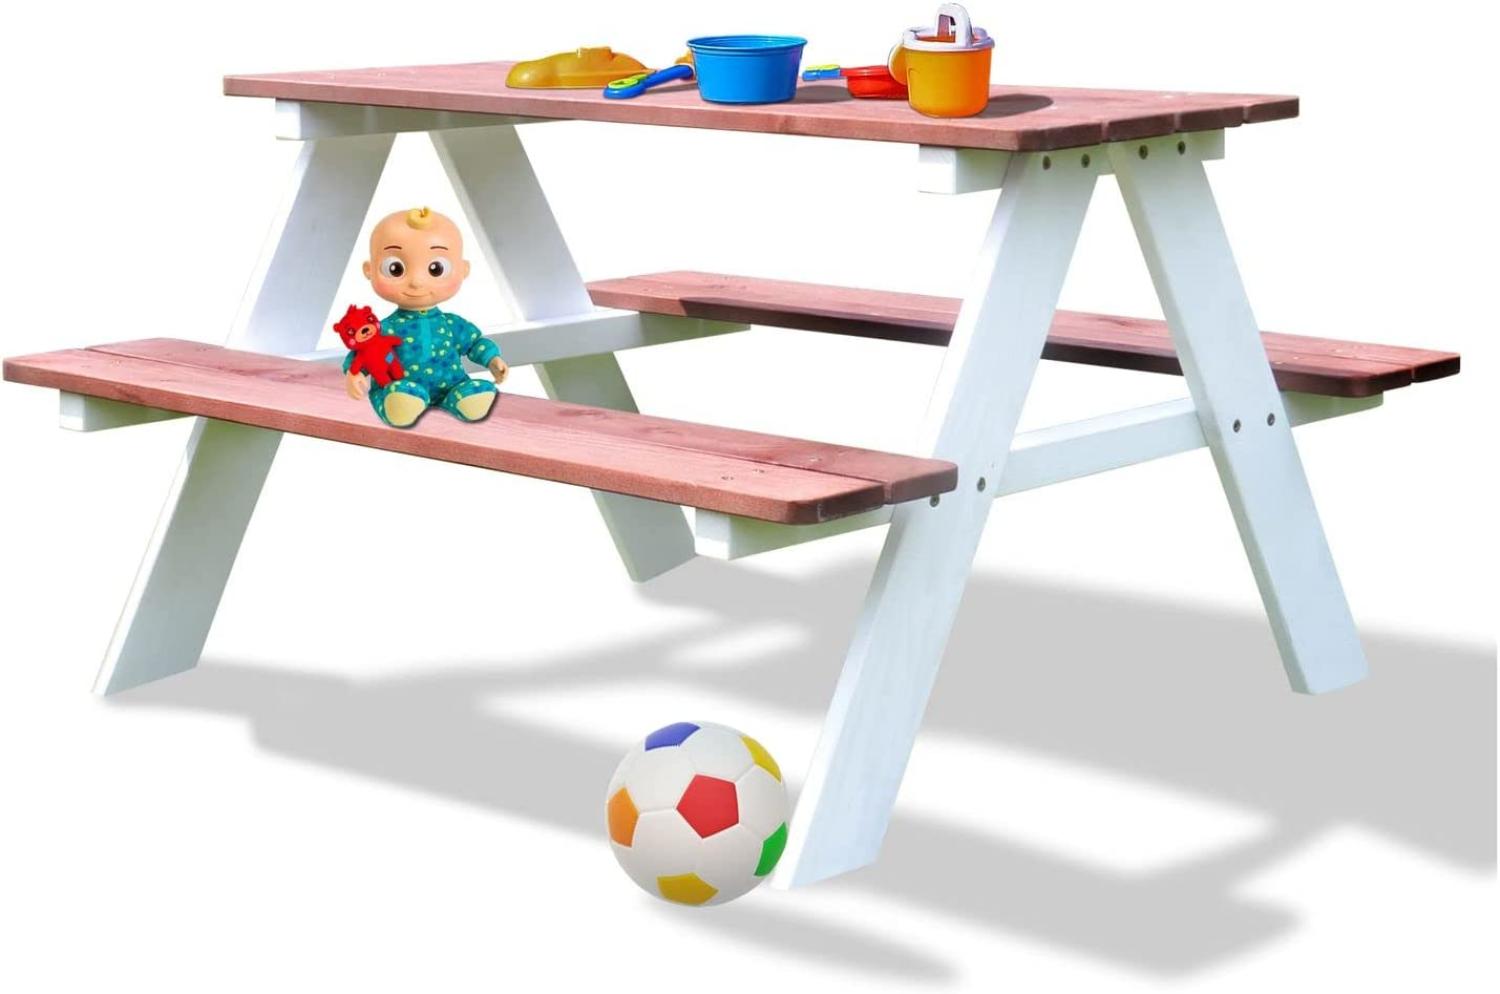 Coemo Picknicktisch Holz Kinder Sitzgruppe Gartentisch Sitzgarnitur Weiß/Teak Bild 1